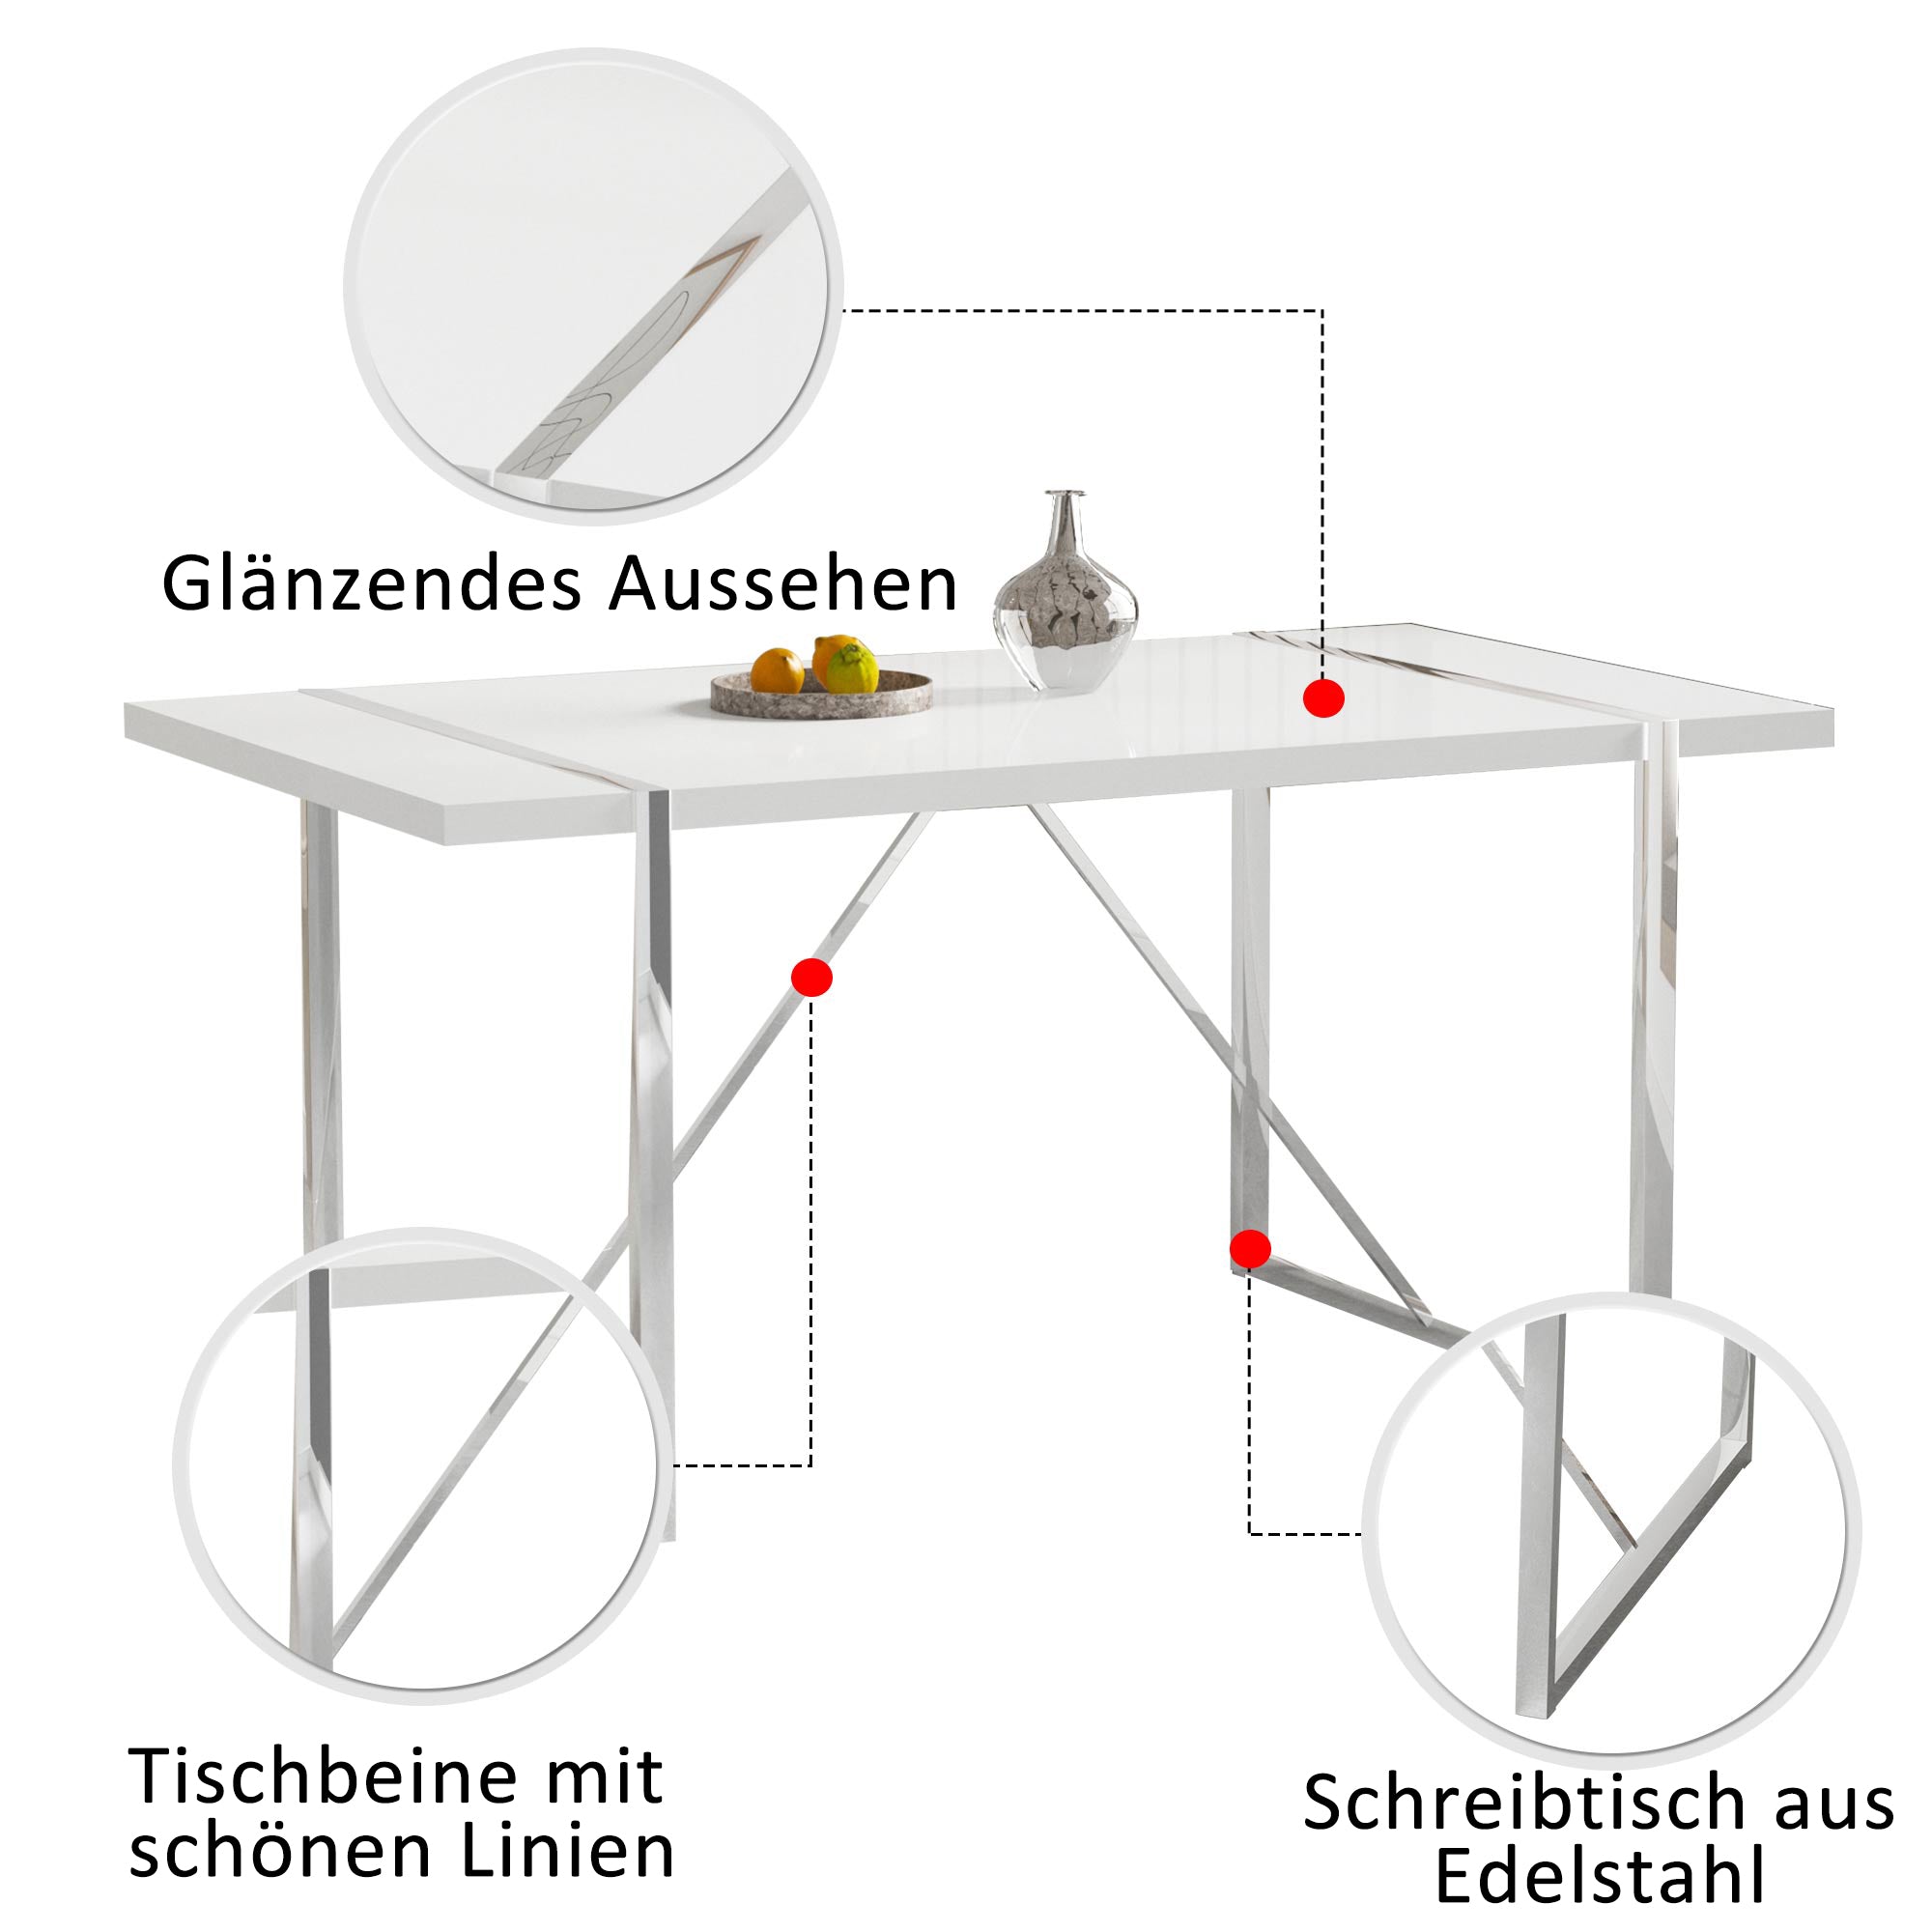 okwish Tisch- und Stuhlset, Beine aus Edelstahl, weißer Esstisch mit 4 schwarzen Stühlen, rechteckiger Esstisch, modernes Esszimmermöbelset, luxuriöser minimalistischer Stil